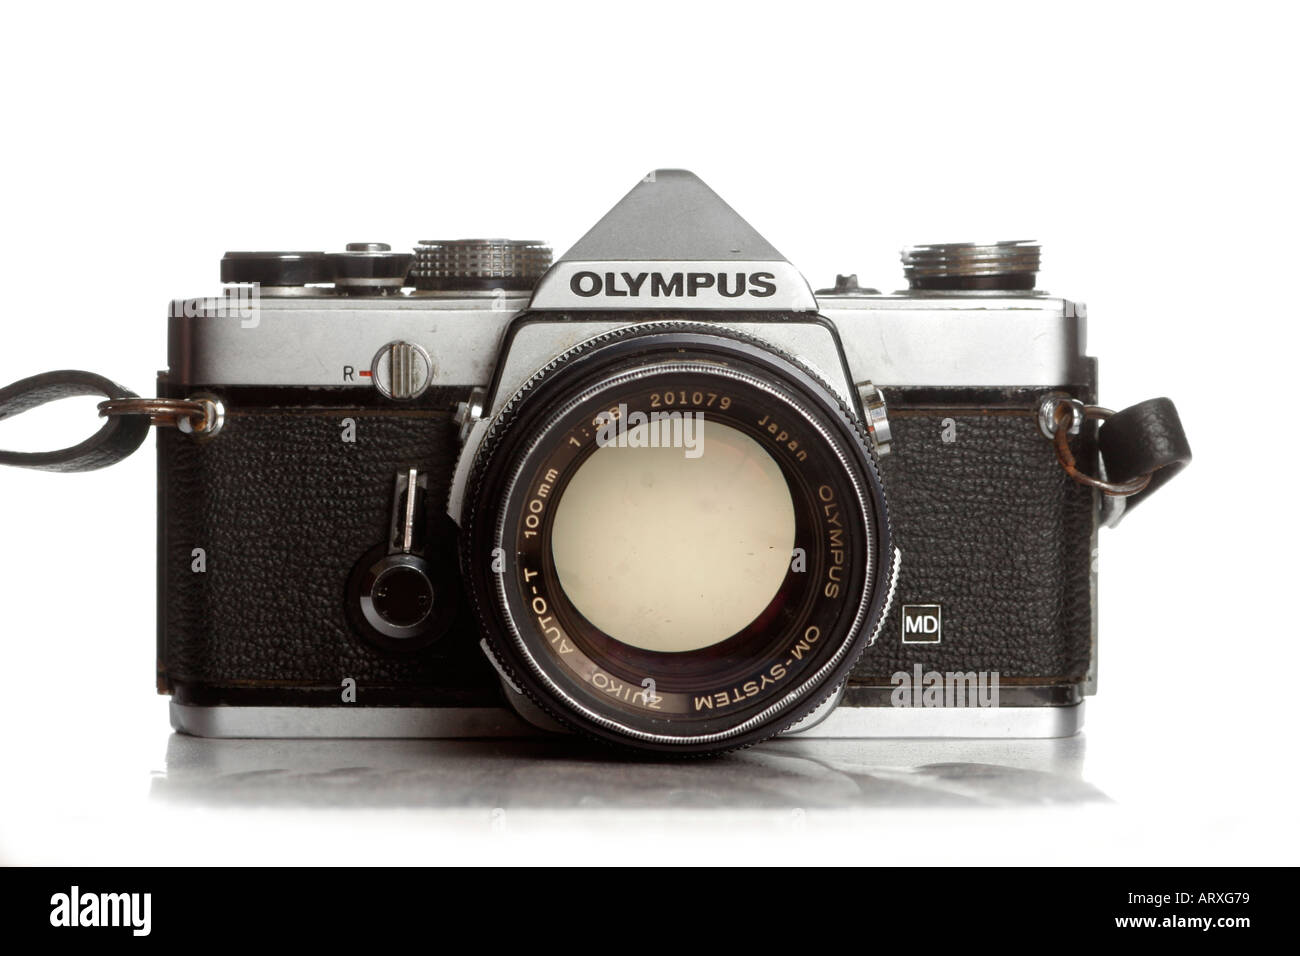 Olympus om fotografías e imágenes de alta resolución - Alamy